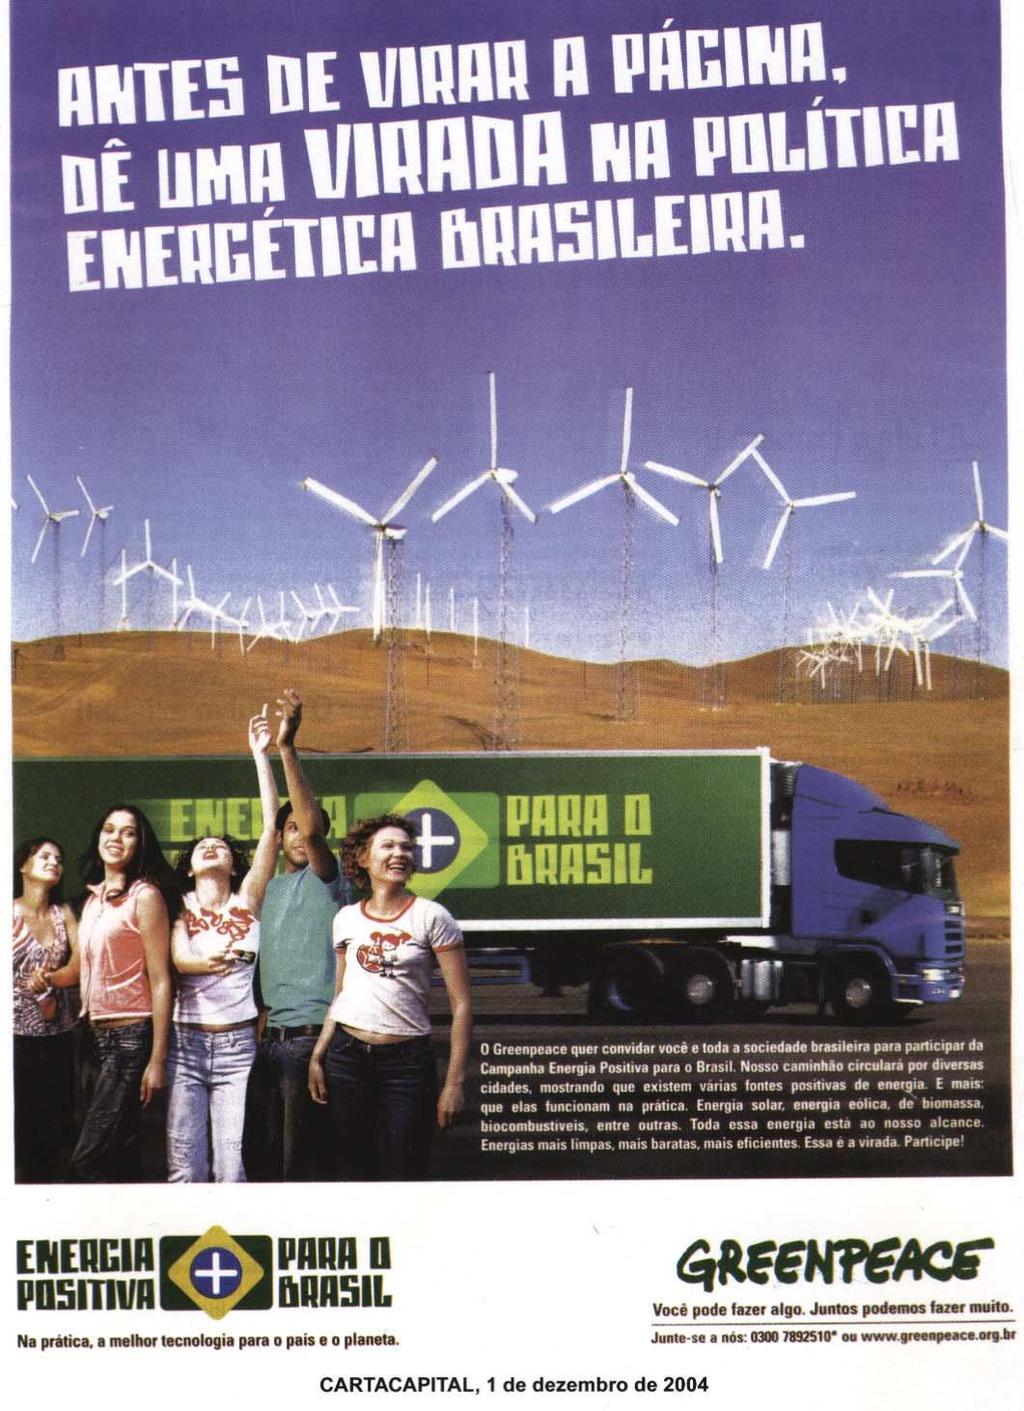 Antes de virar a página, dê uma virada na política energética brasileira A questão ambiental é uma das maiores preocupações da sociedade contemporânea. Você também tem essa preocupação?